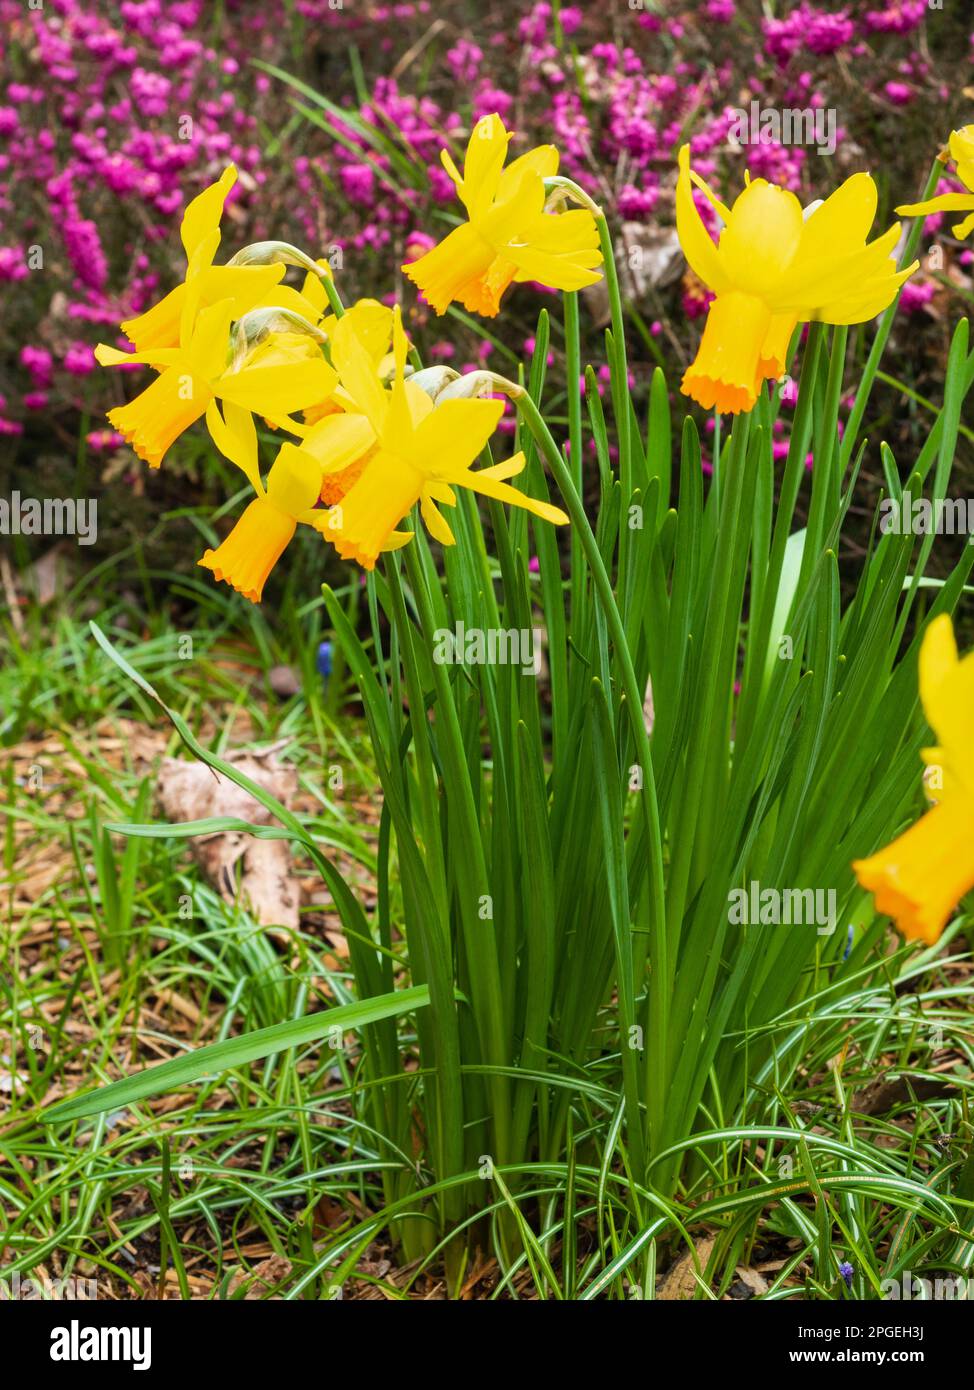 Tromba arancione e petali gialli riflettenti del nana ciclamineo ibrido daffodil, Narcissus 'Jetfire' Foto Stock